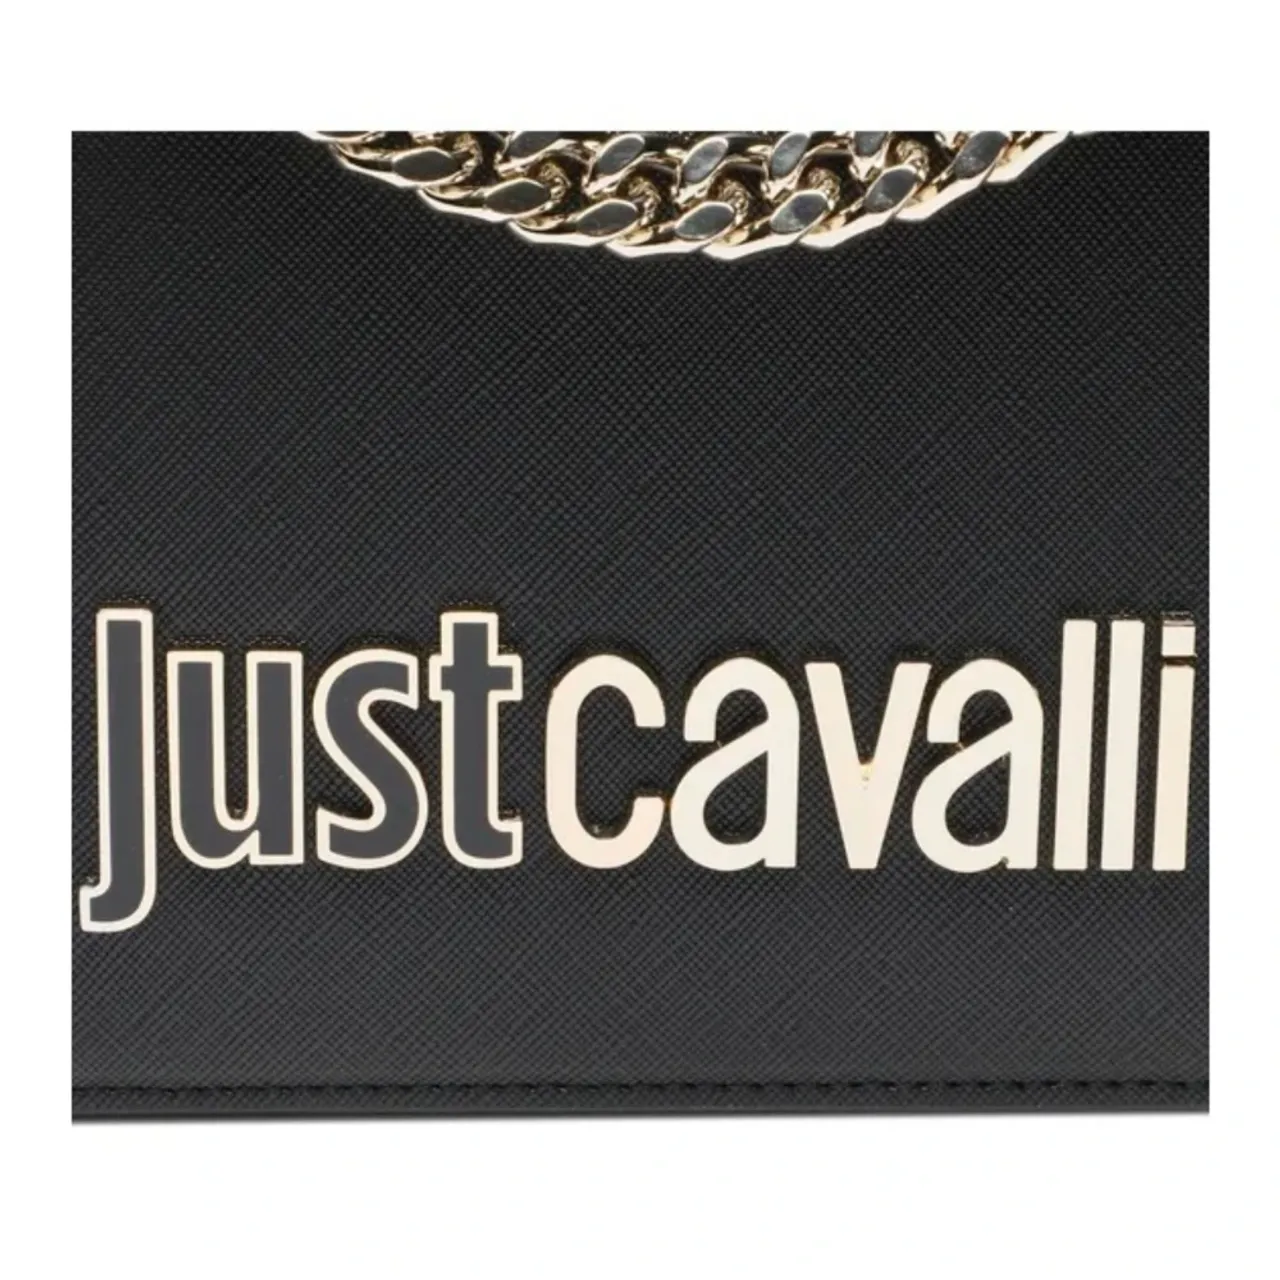 Metallbuchstaben Skizze Saffiano Taschenkollektion Just Cavalli